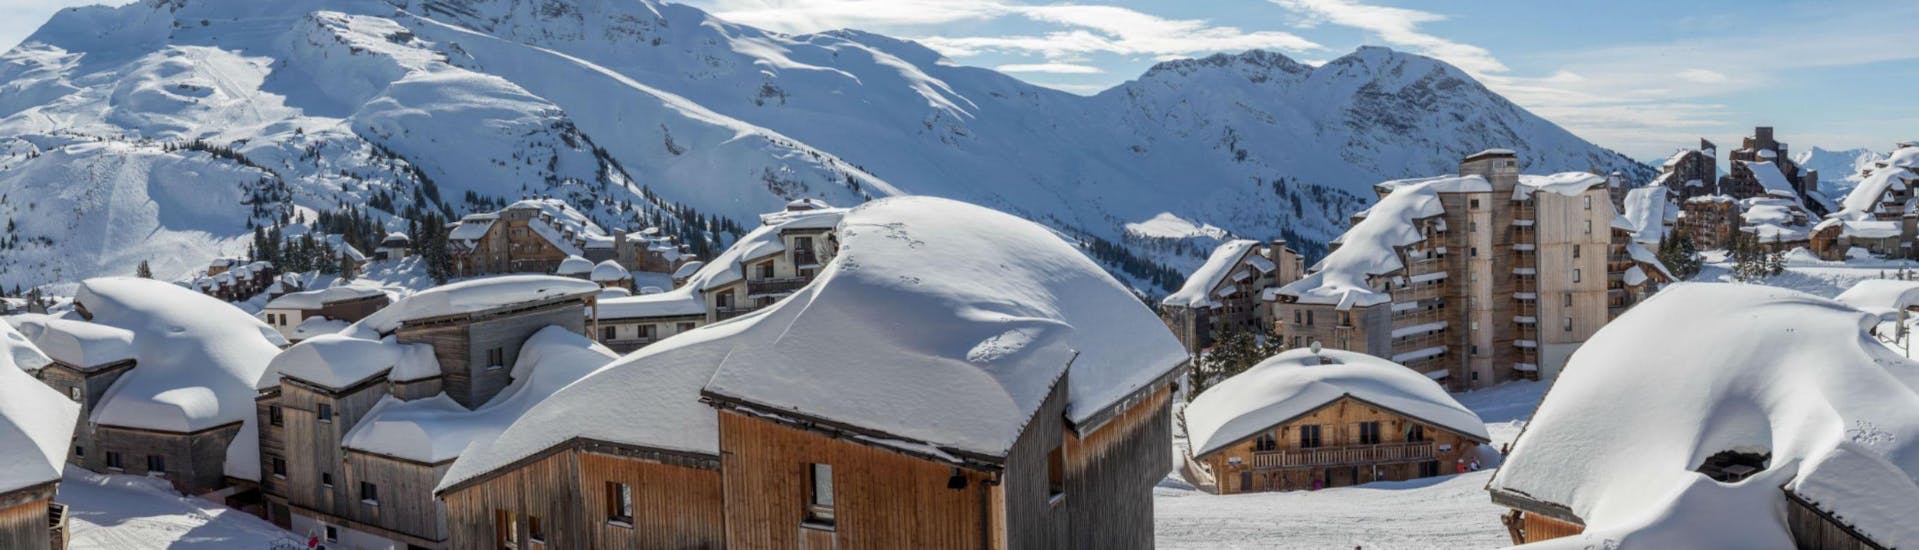 Ein Panoramablick über die schneebedeckten Berghütten und Hotels im französischen Skigebiet Avoriaz, wo örtliche Skischulen ihre Skikurse anbieten.